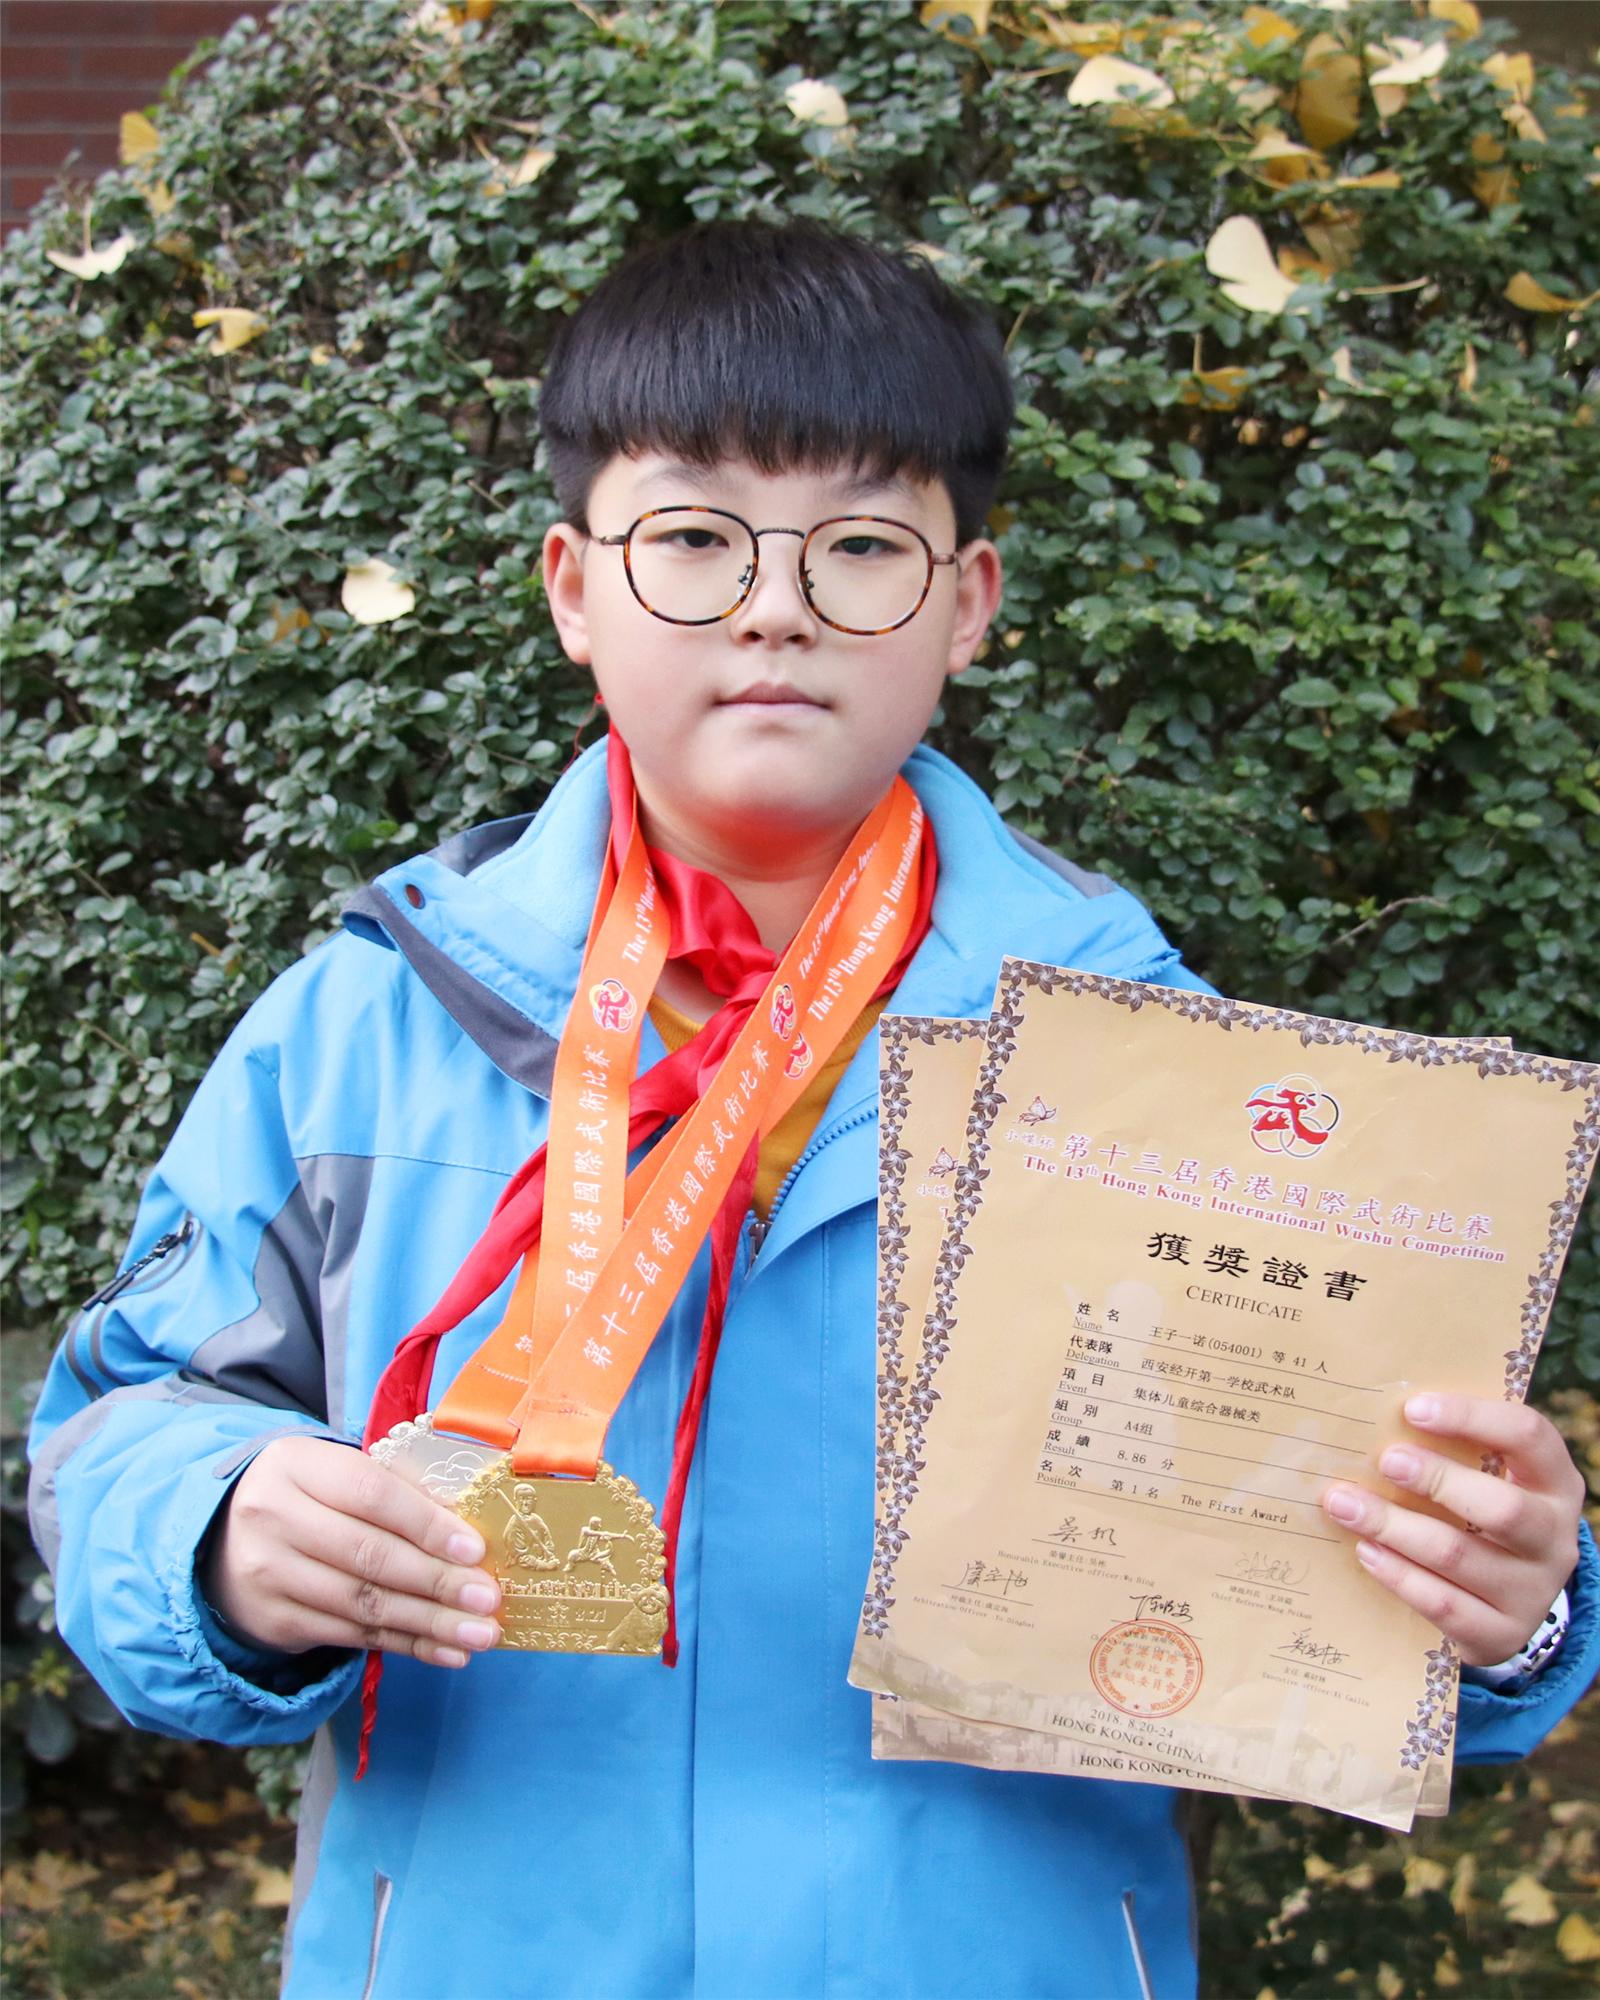 五年级一班 王子一诺 第十三届香港国际武术比赛集体儿童综合器械类A4组第一名.jpg